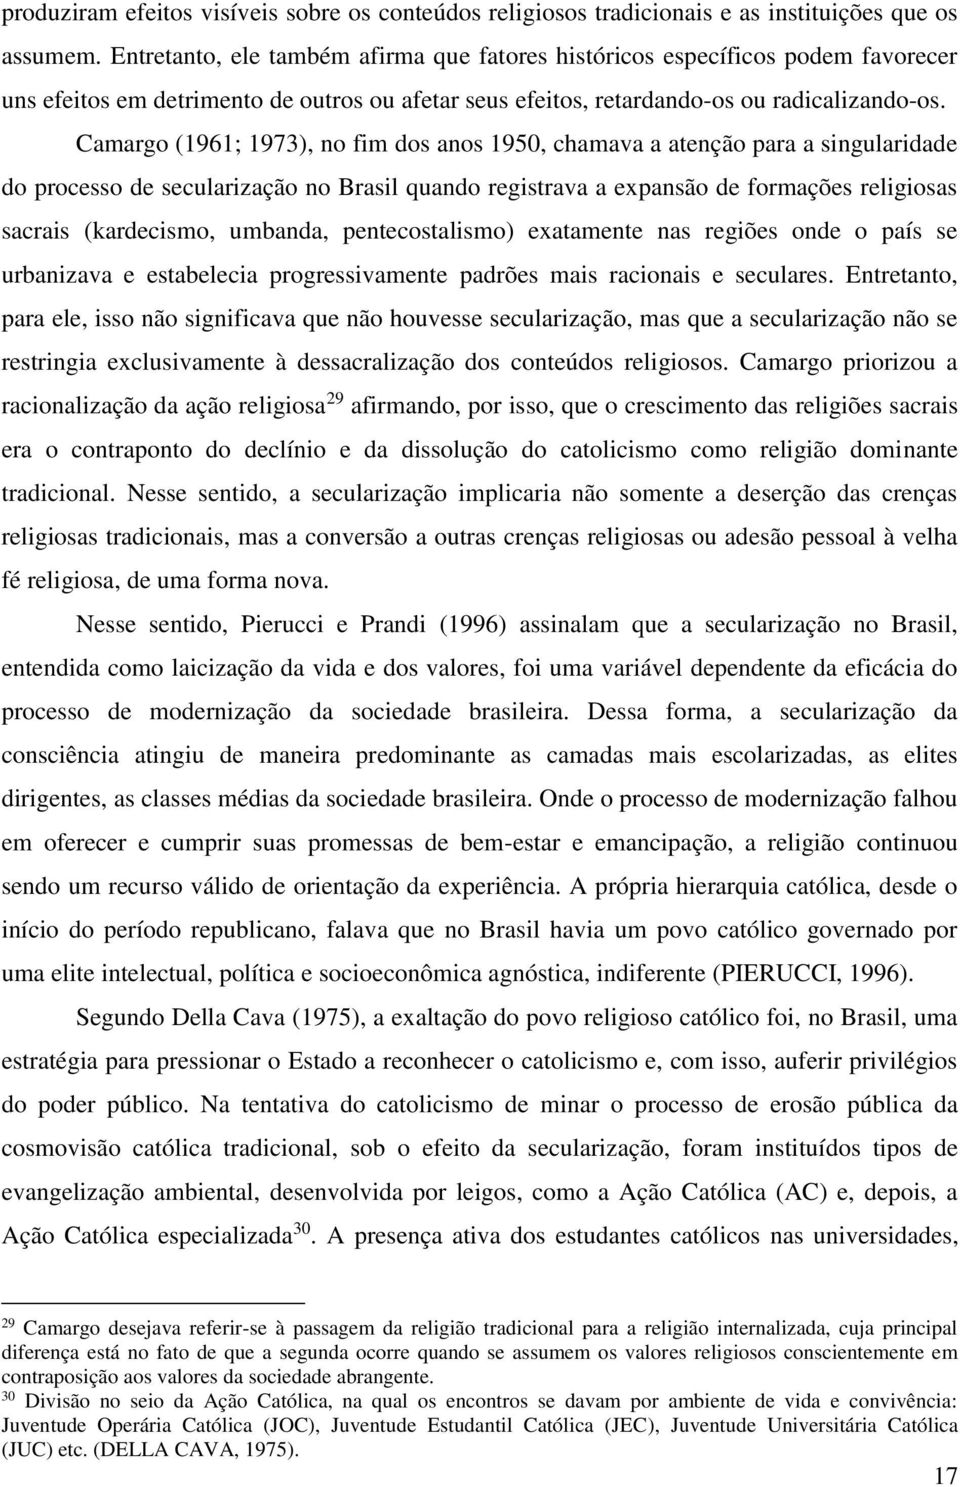 Camargo (1961; 1973), no fim dos anos 1950, chamava a atenção para a singularidade do processo de secularização no Brasil quando registrava a expansão de formações religiosas sacrais (kardecismo,